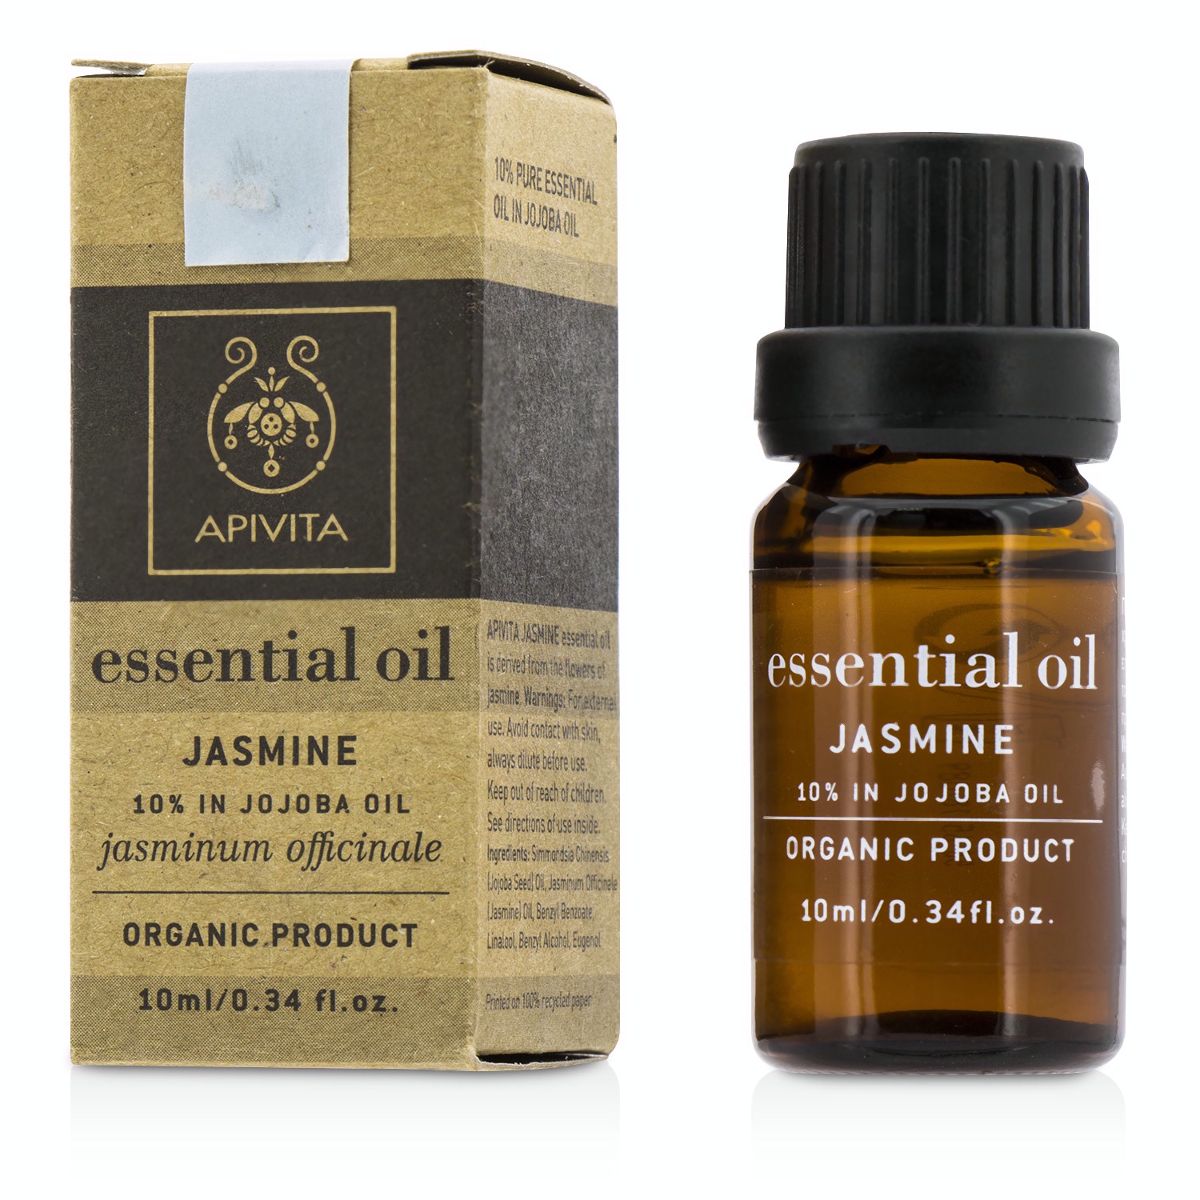 Essential Oil - Jasmine Apivita Image